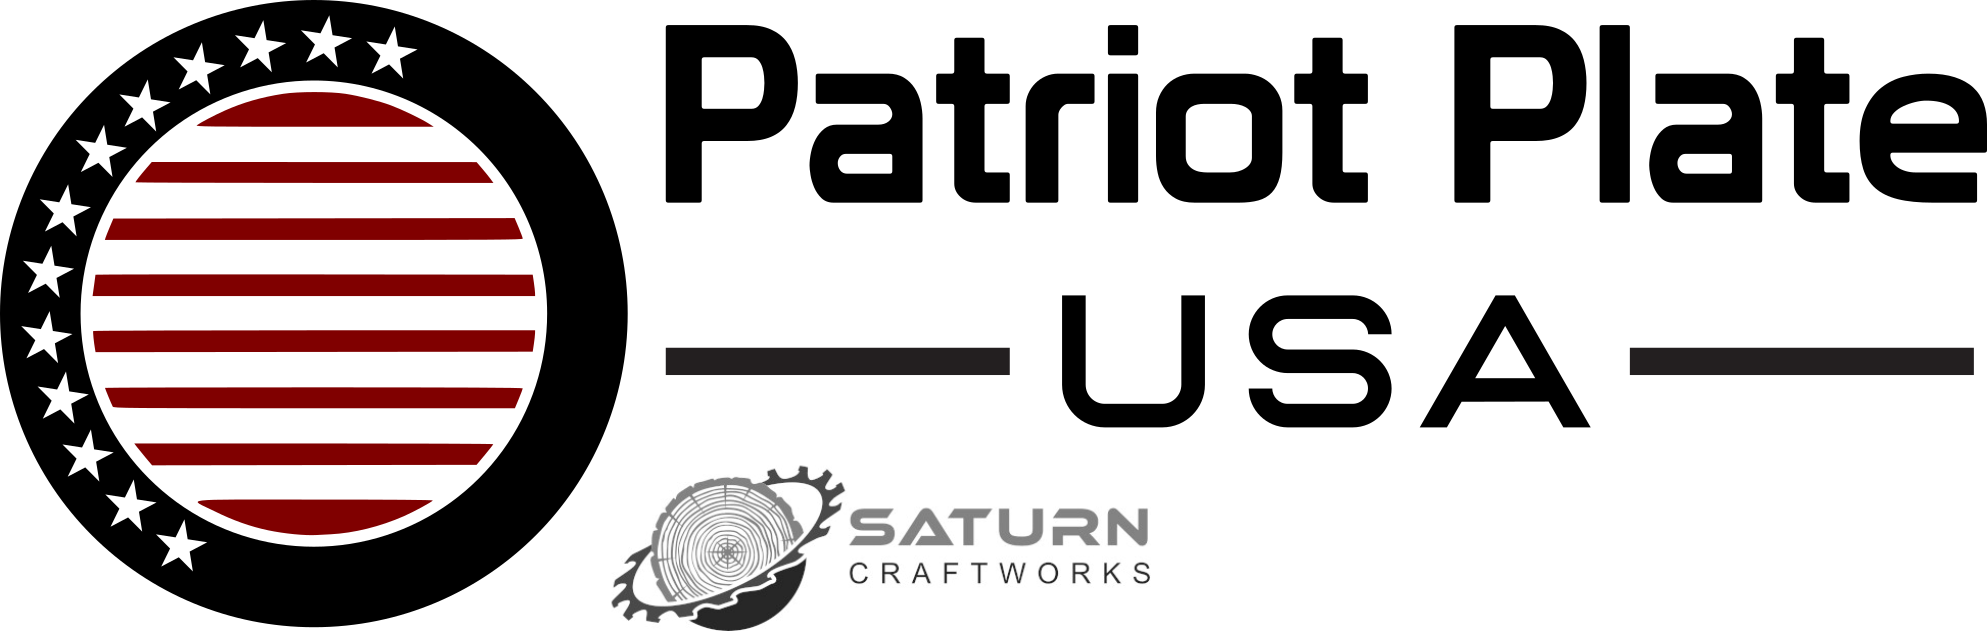 Patriot Plate USA